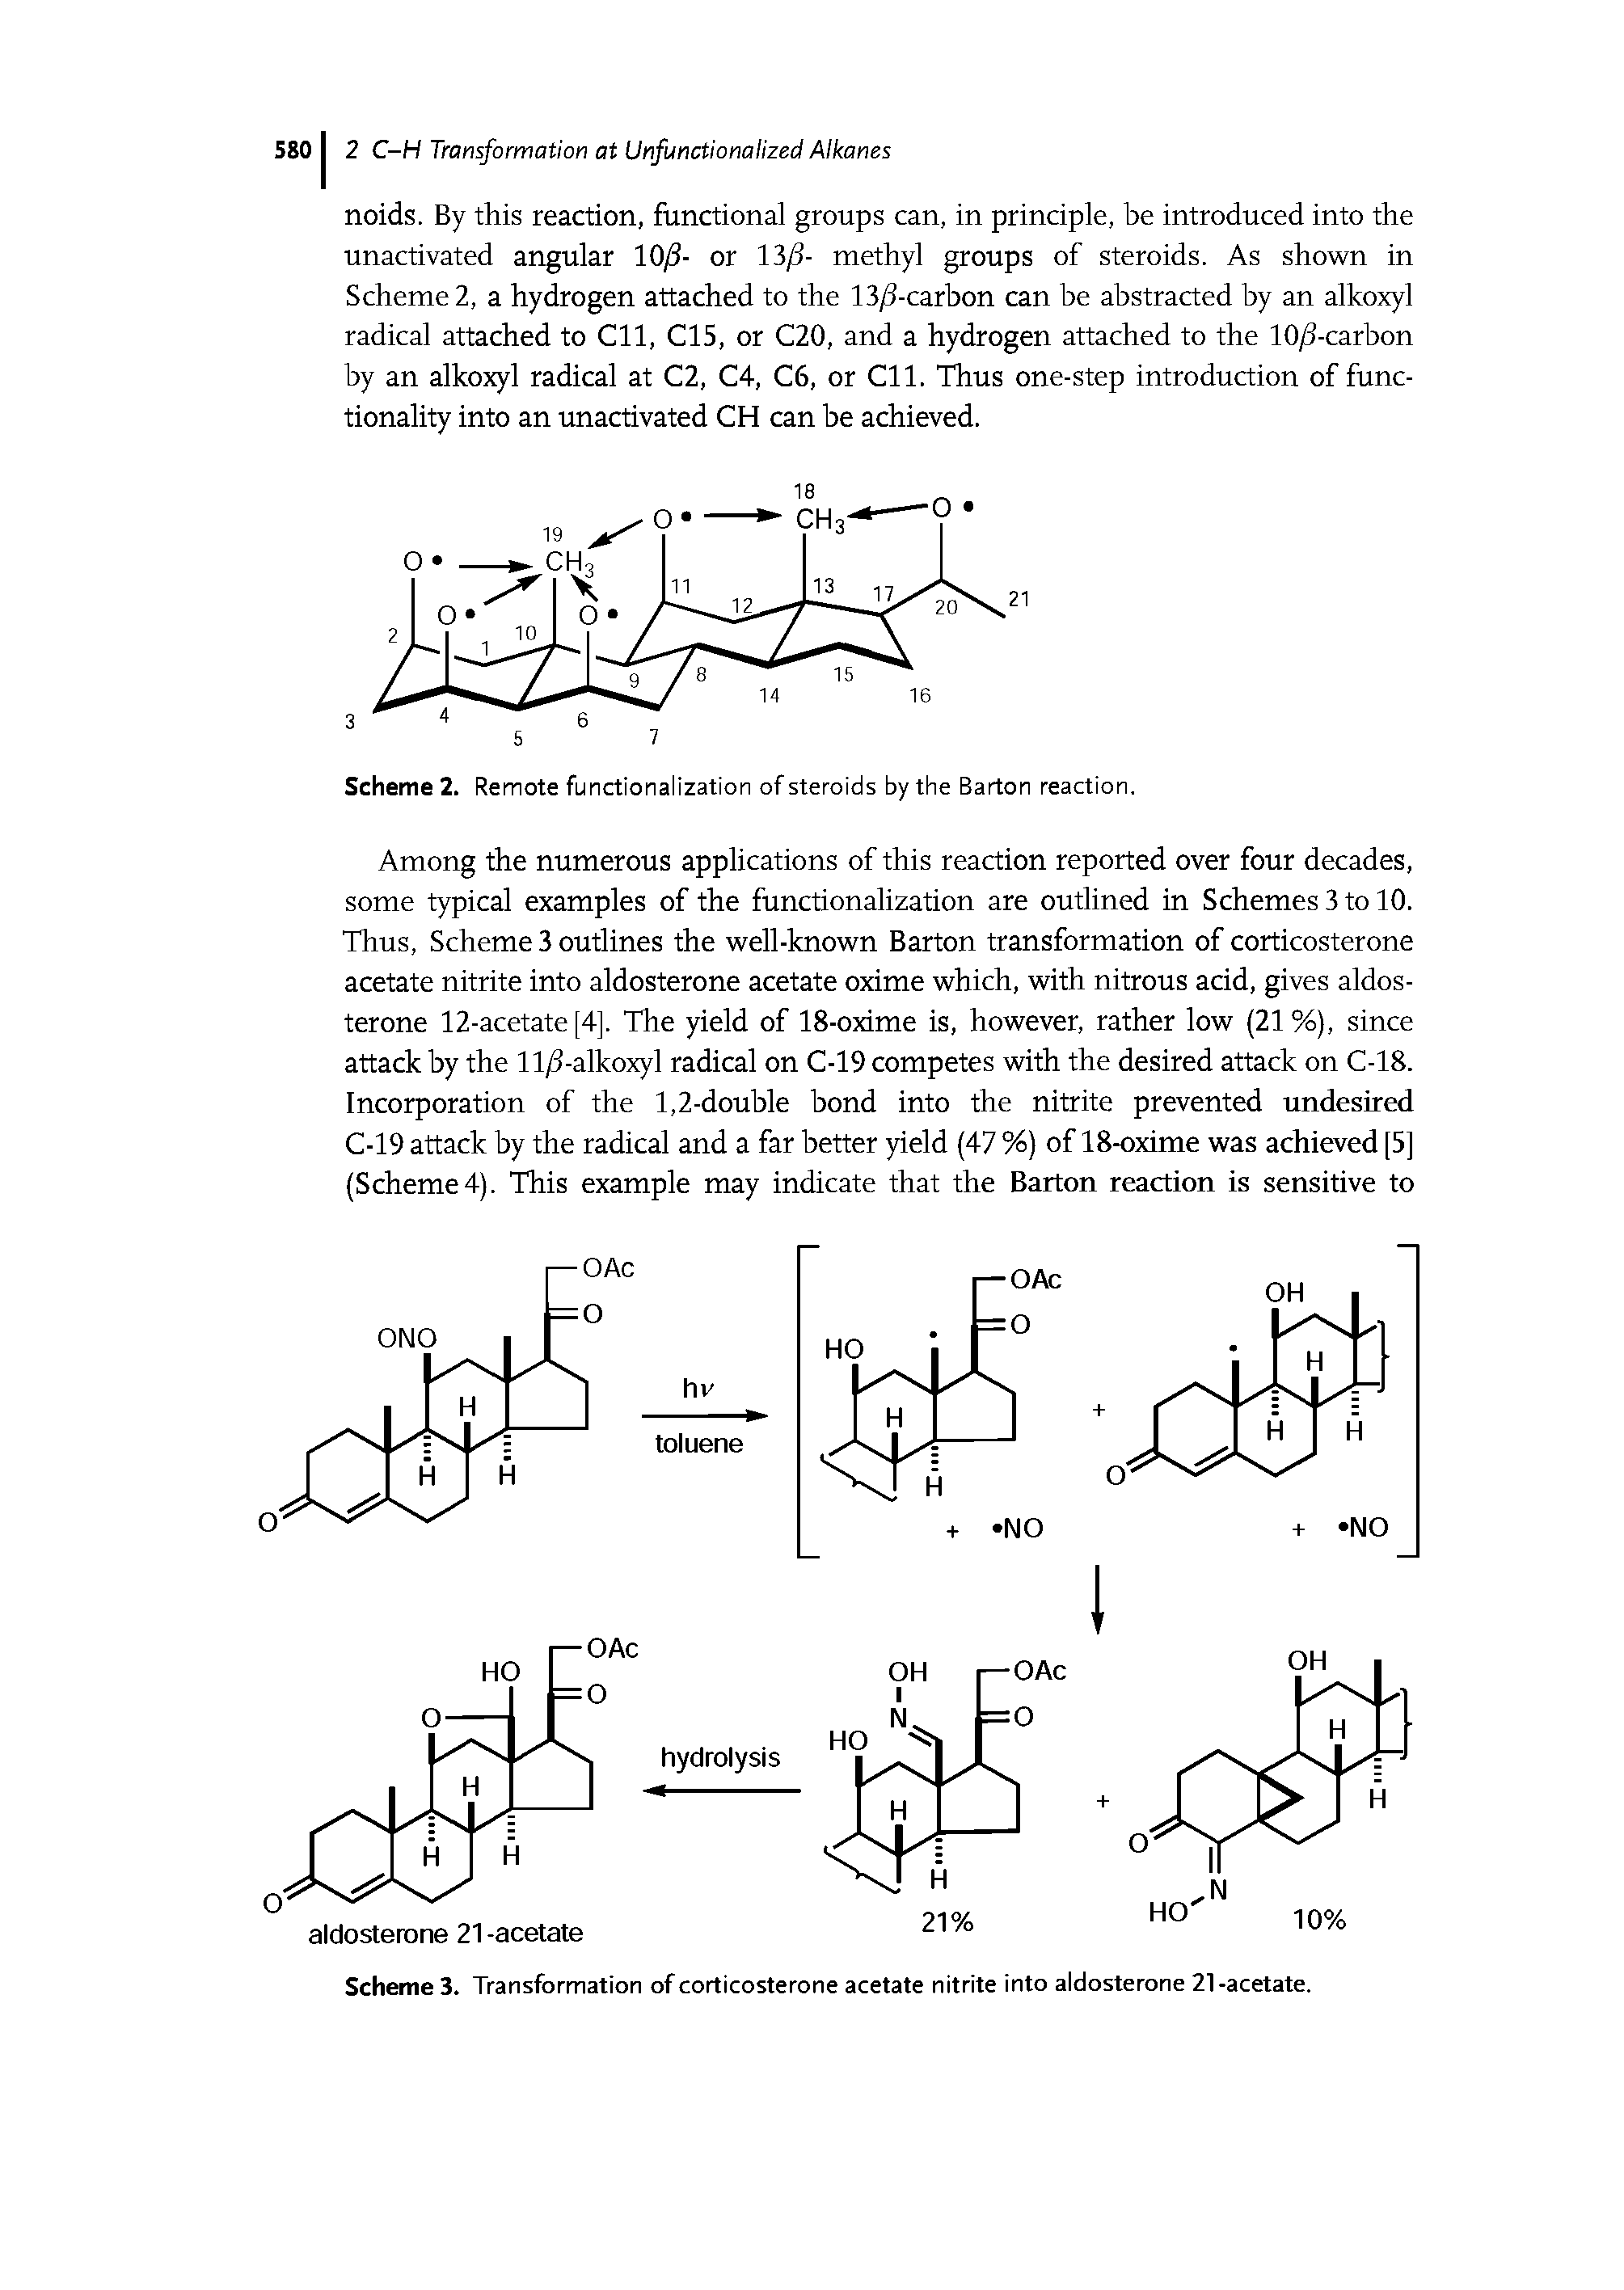 Scheme 3. Transformation of corticosterone acetate nitrite into aldosterone 21-acetate.